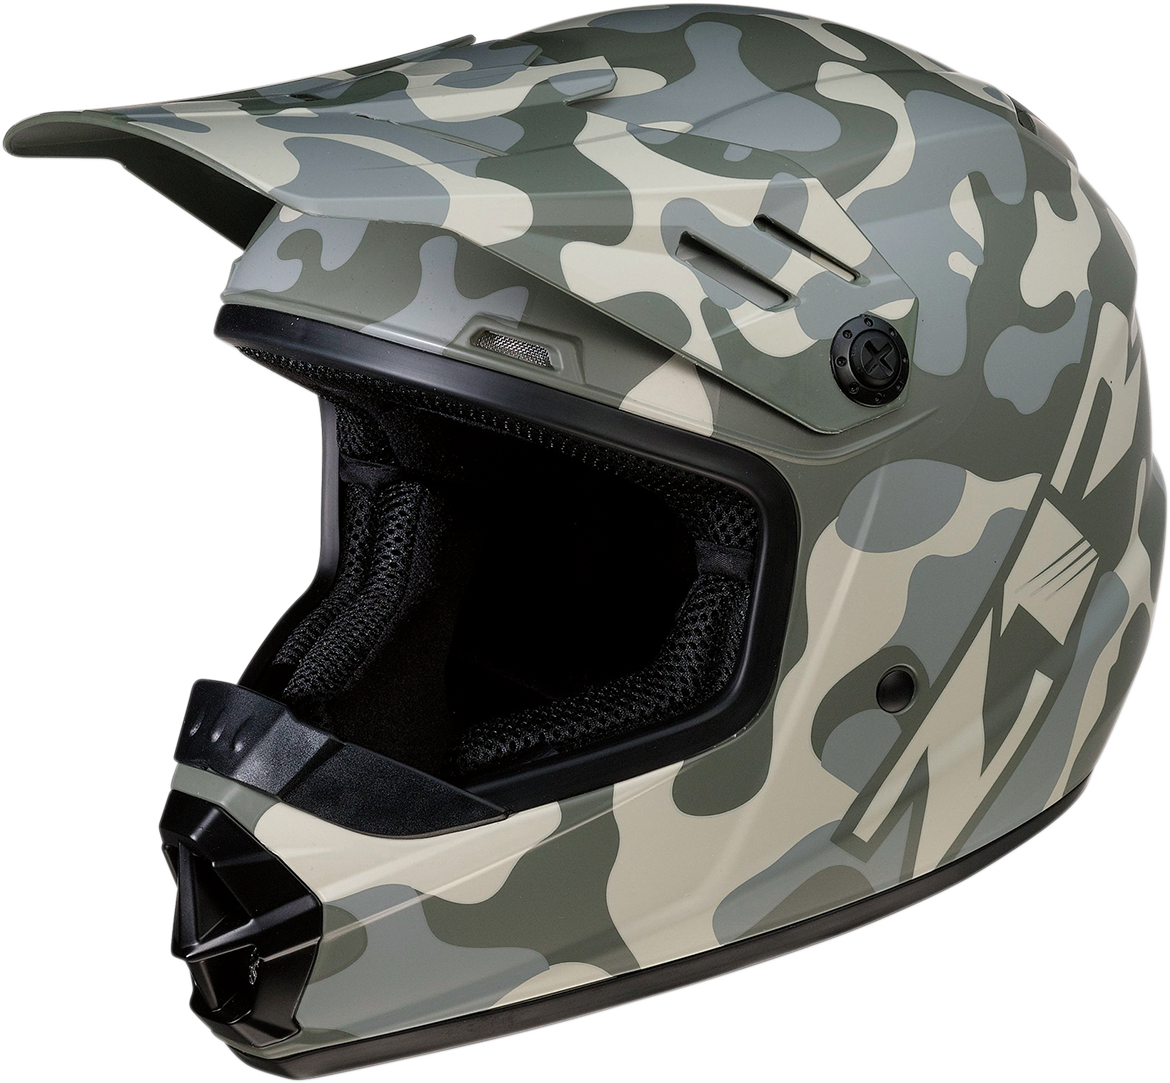 Z1R Youth Rise Helmet - Camo - Desert - Large 0111-1263